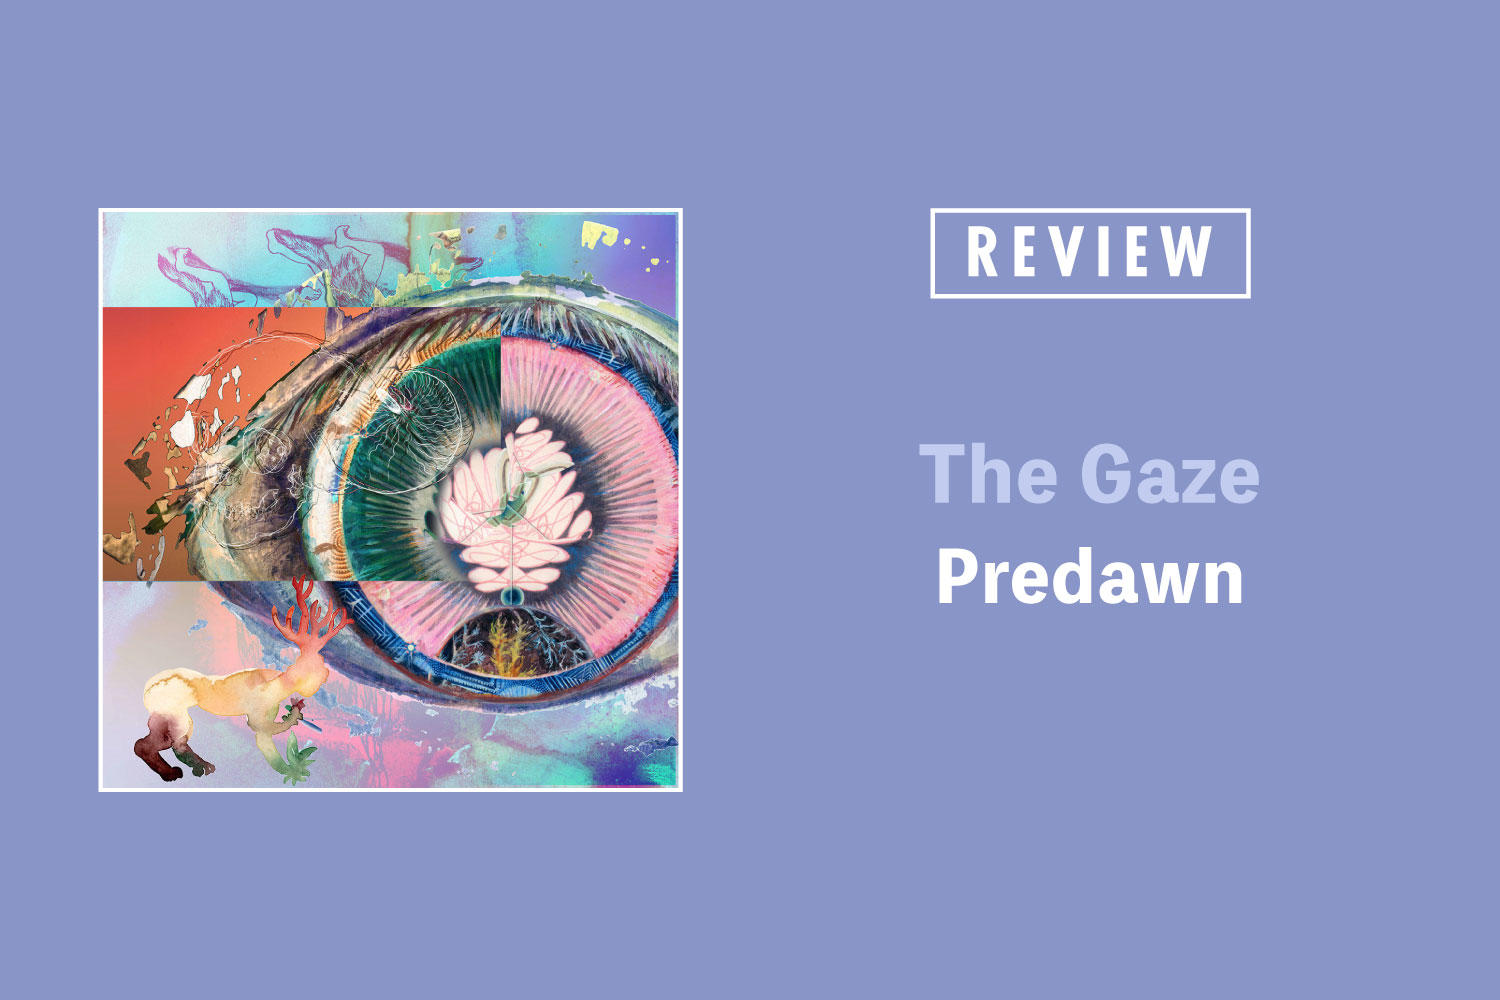 Predawn「The Gaze」──これまで以上に色彩豊かになった〈夜明け前の国〉